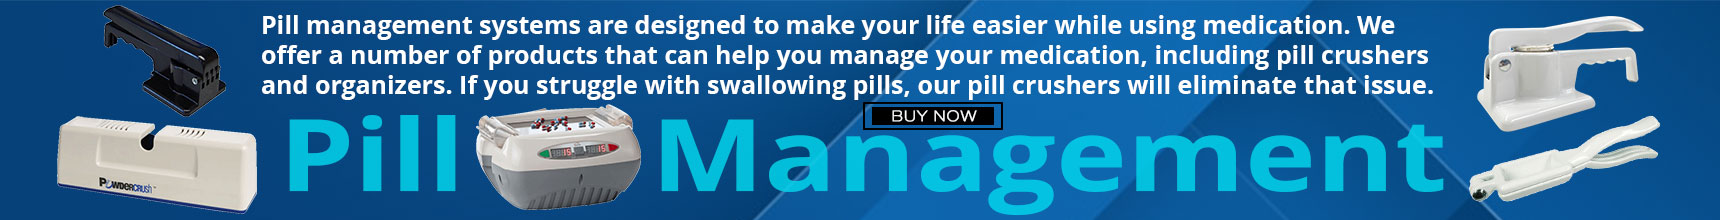 pill-management 